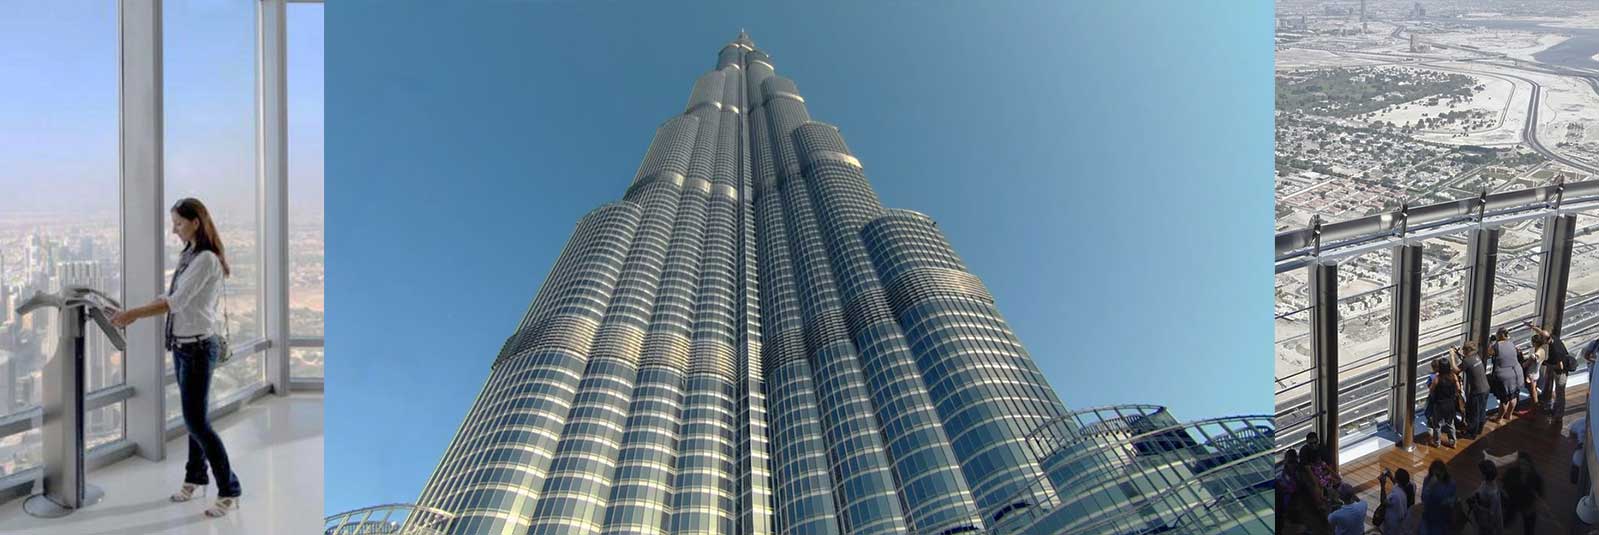 Burj-Khalifa-Ticket